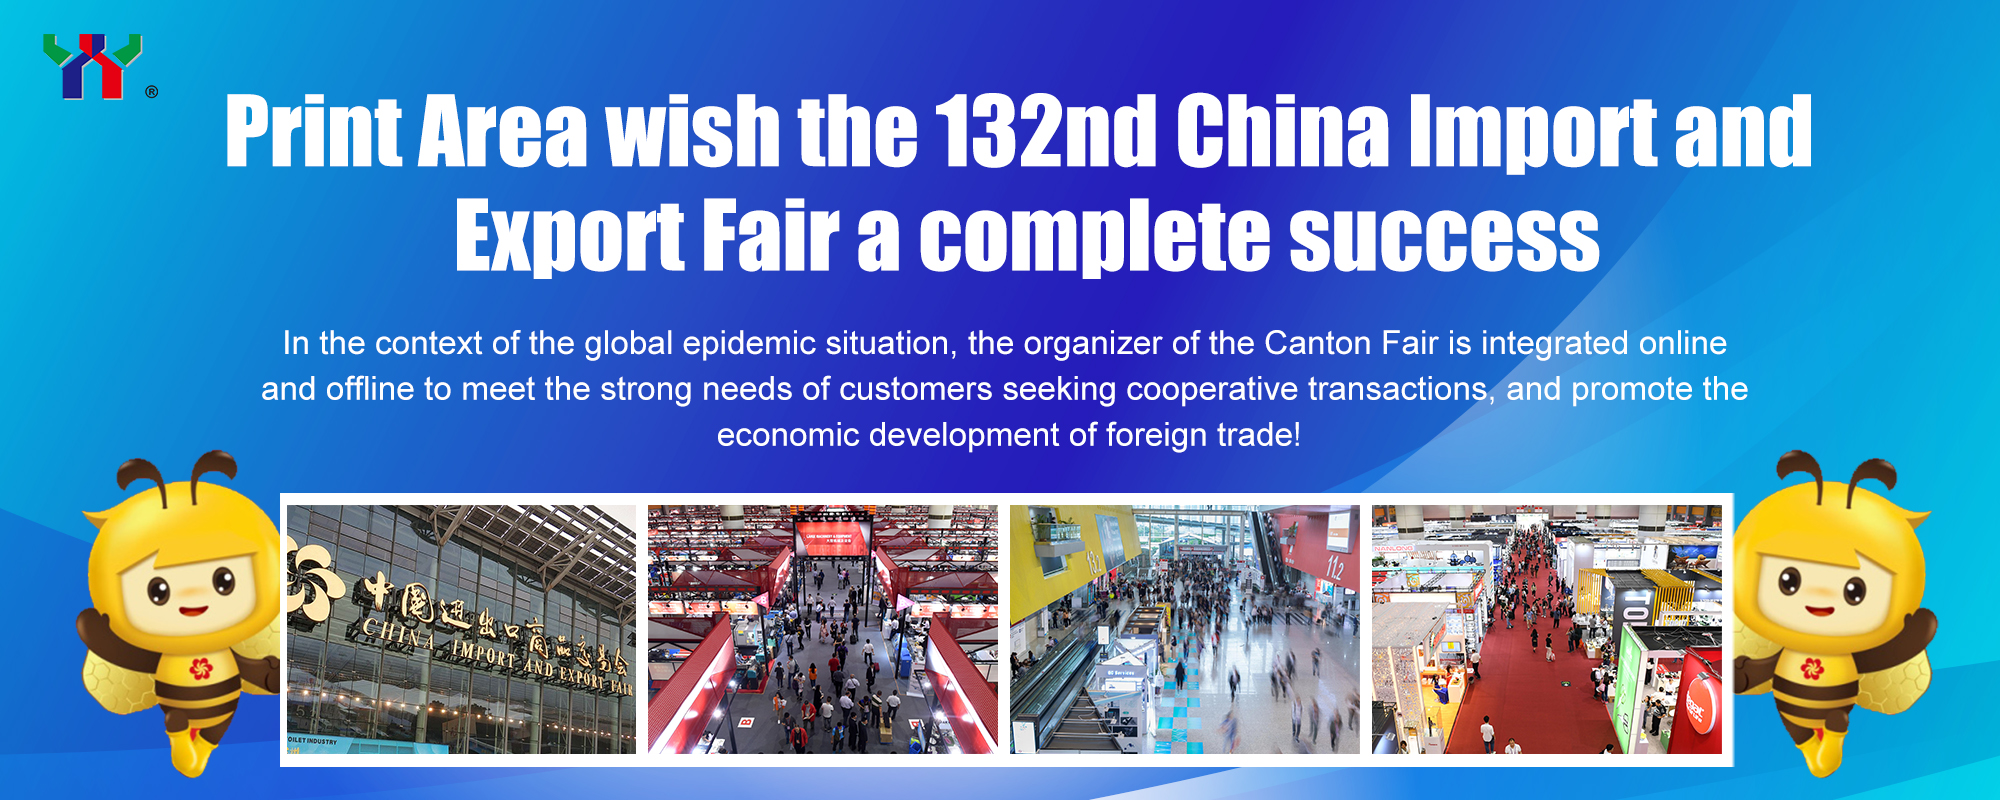 Nais ng Print Area na maging ganap na tagumpay ang 132nd China Import and Export Fair